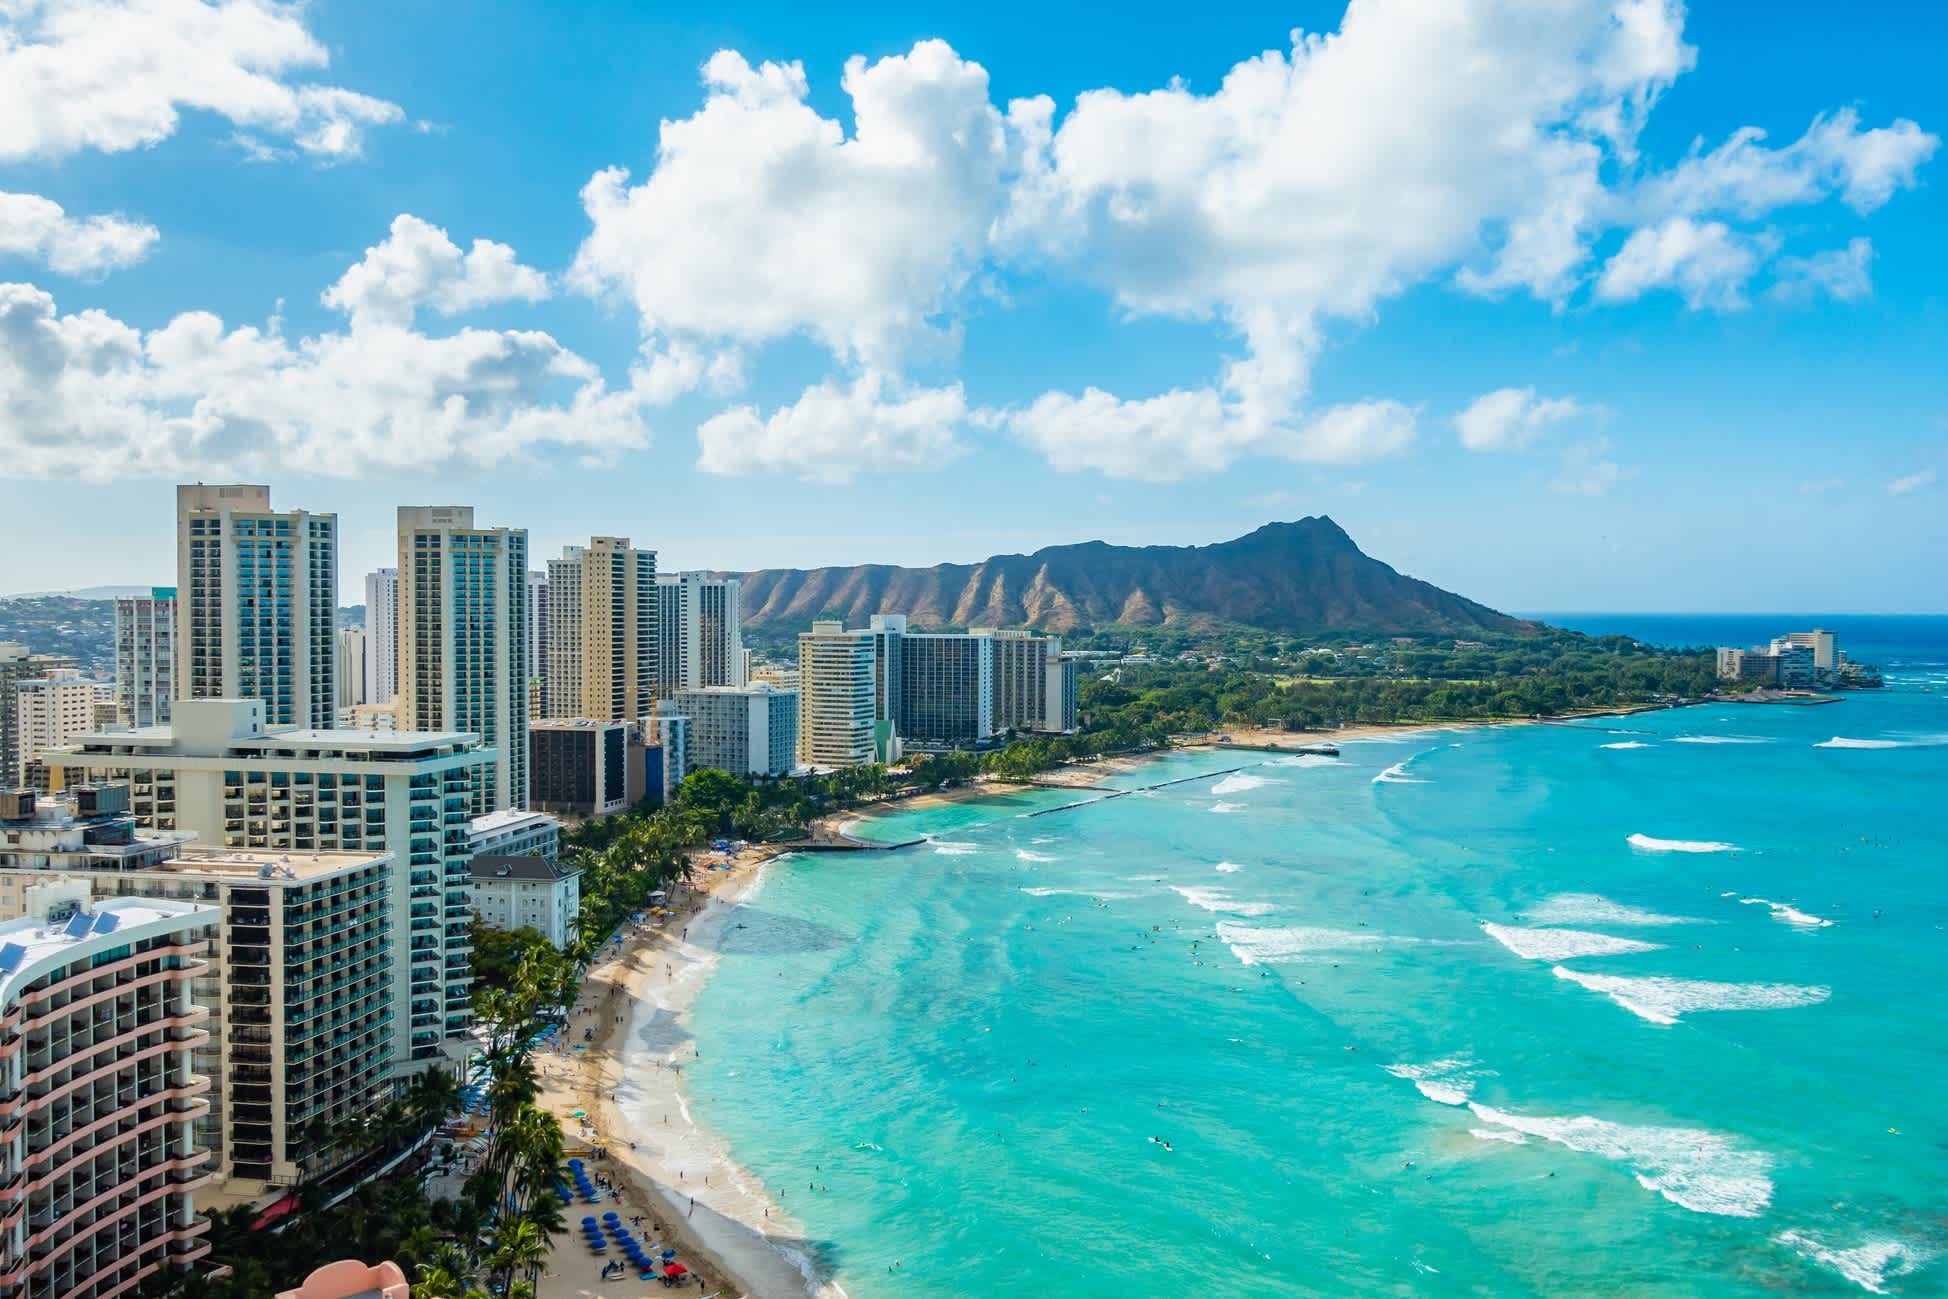 Waikiki Beach et Diamond Head Crater avec les hôtels et les bâtiments de Waikiki, Honolulu, île d'Oahu, Hawaï. Waikiki Beach au centre d'Honolulu a le plus grand nombre de visiteurs à Hawaii